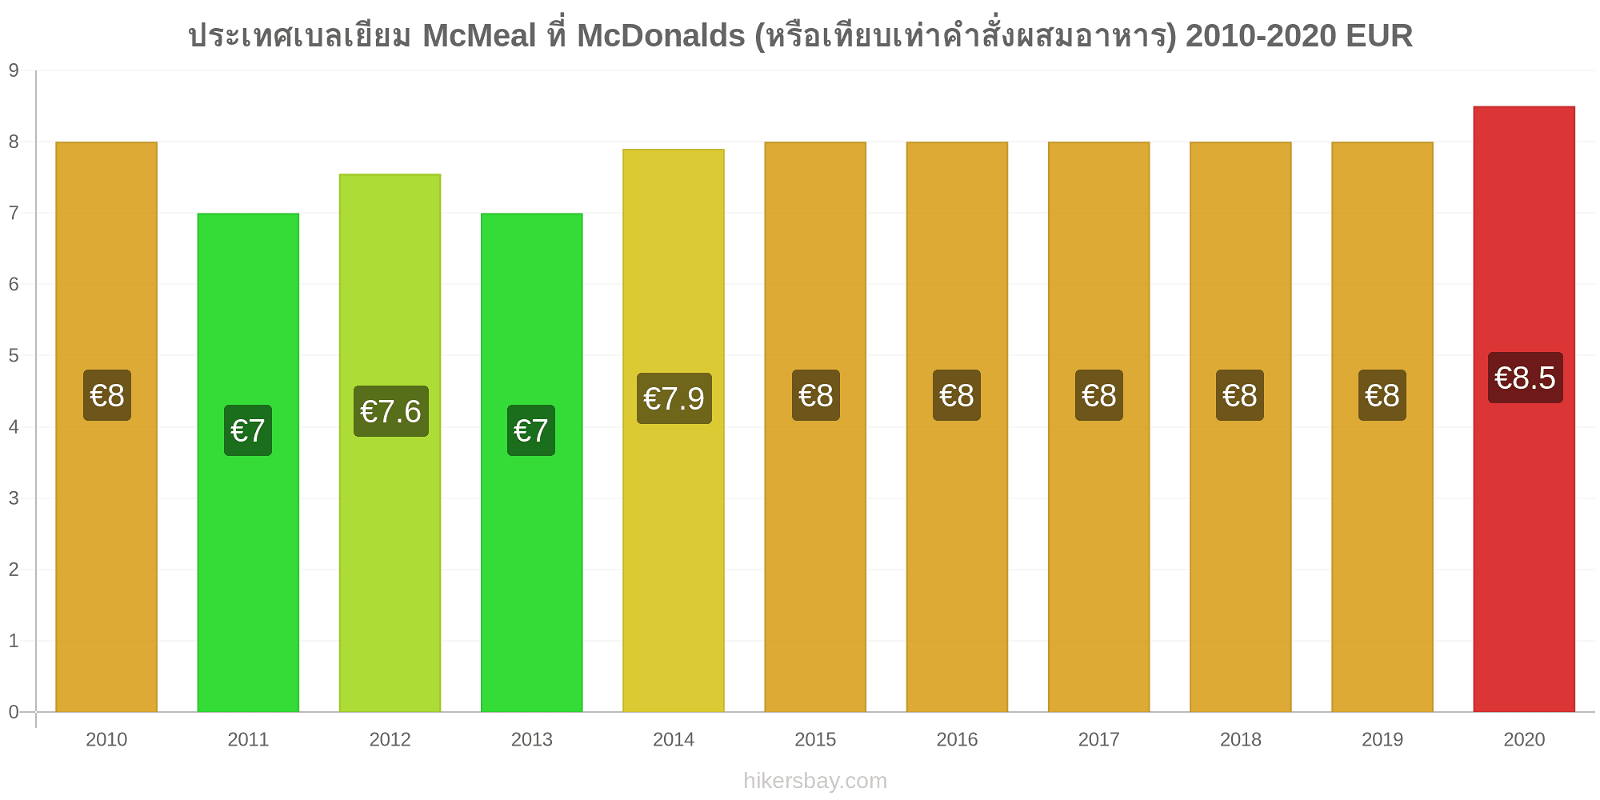 ประเทศเบลเยียม การเปลี่ยนแปลงราคา McMeal ที่ McDonalds (หรือเทียบเท่าคำสั่งผสมอาหาร) hikersbay.com